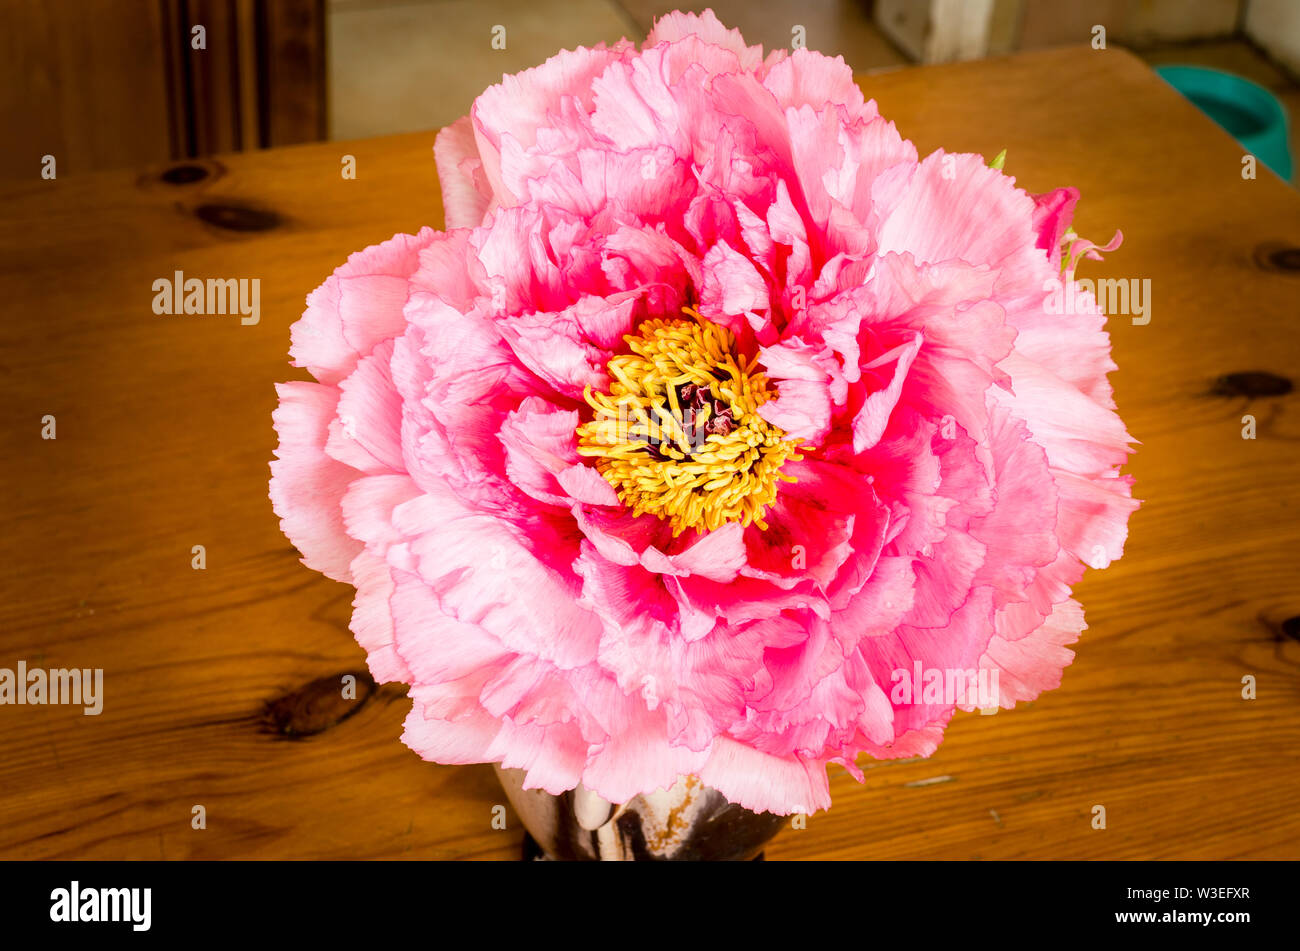 Pallido rosa peonia albero utilizzato come un campione di fiori da taglio in ambienti interni in una caraffa in ceramica posizionato su di un legno di pino tabley cucina Foto Stock